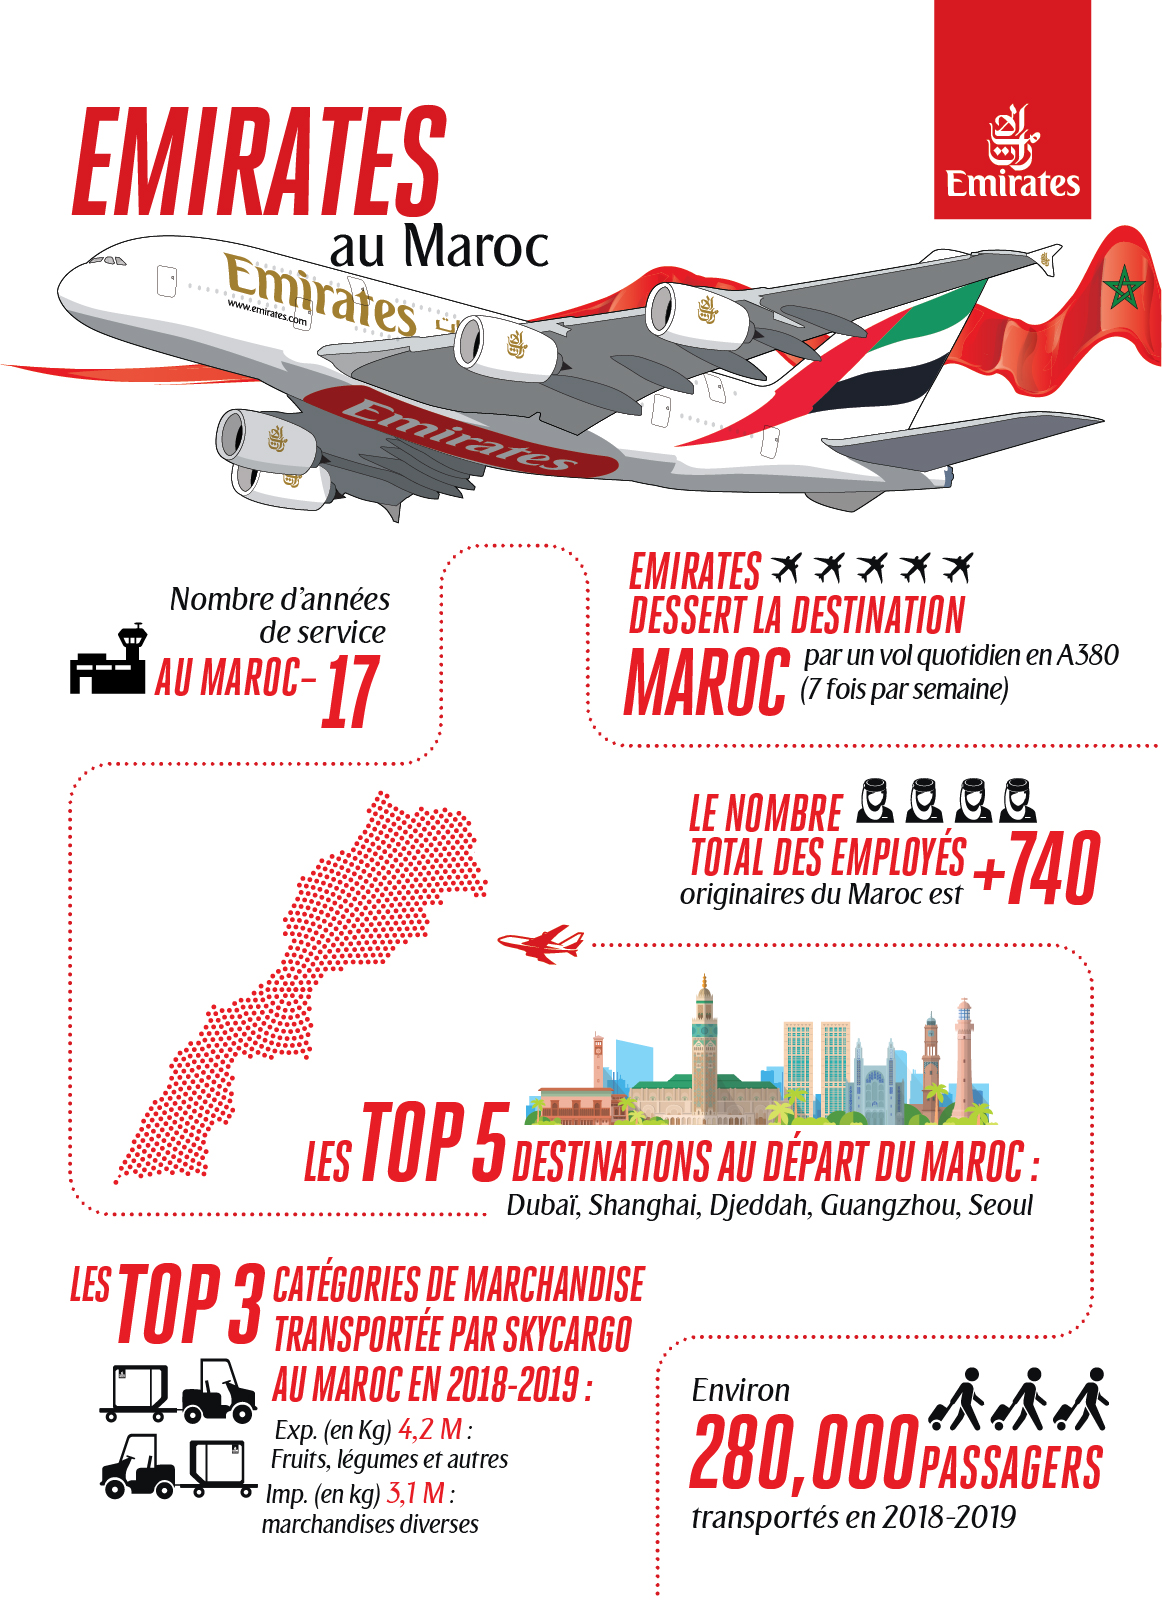 Emirates Maroc